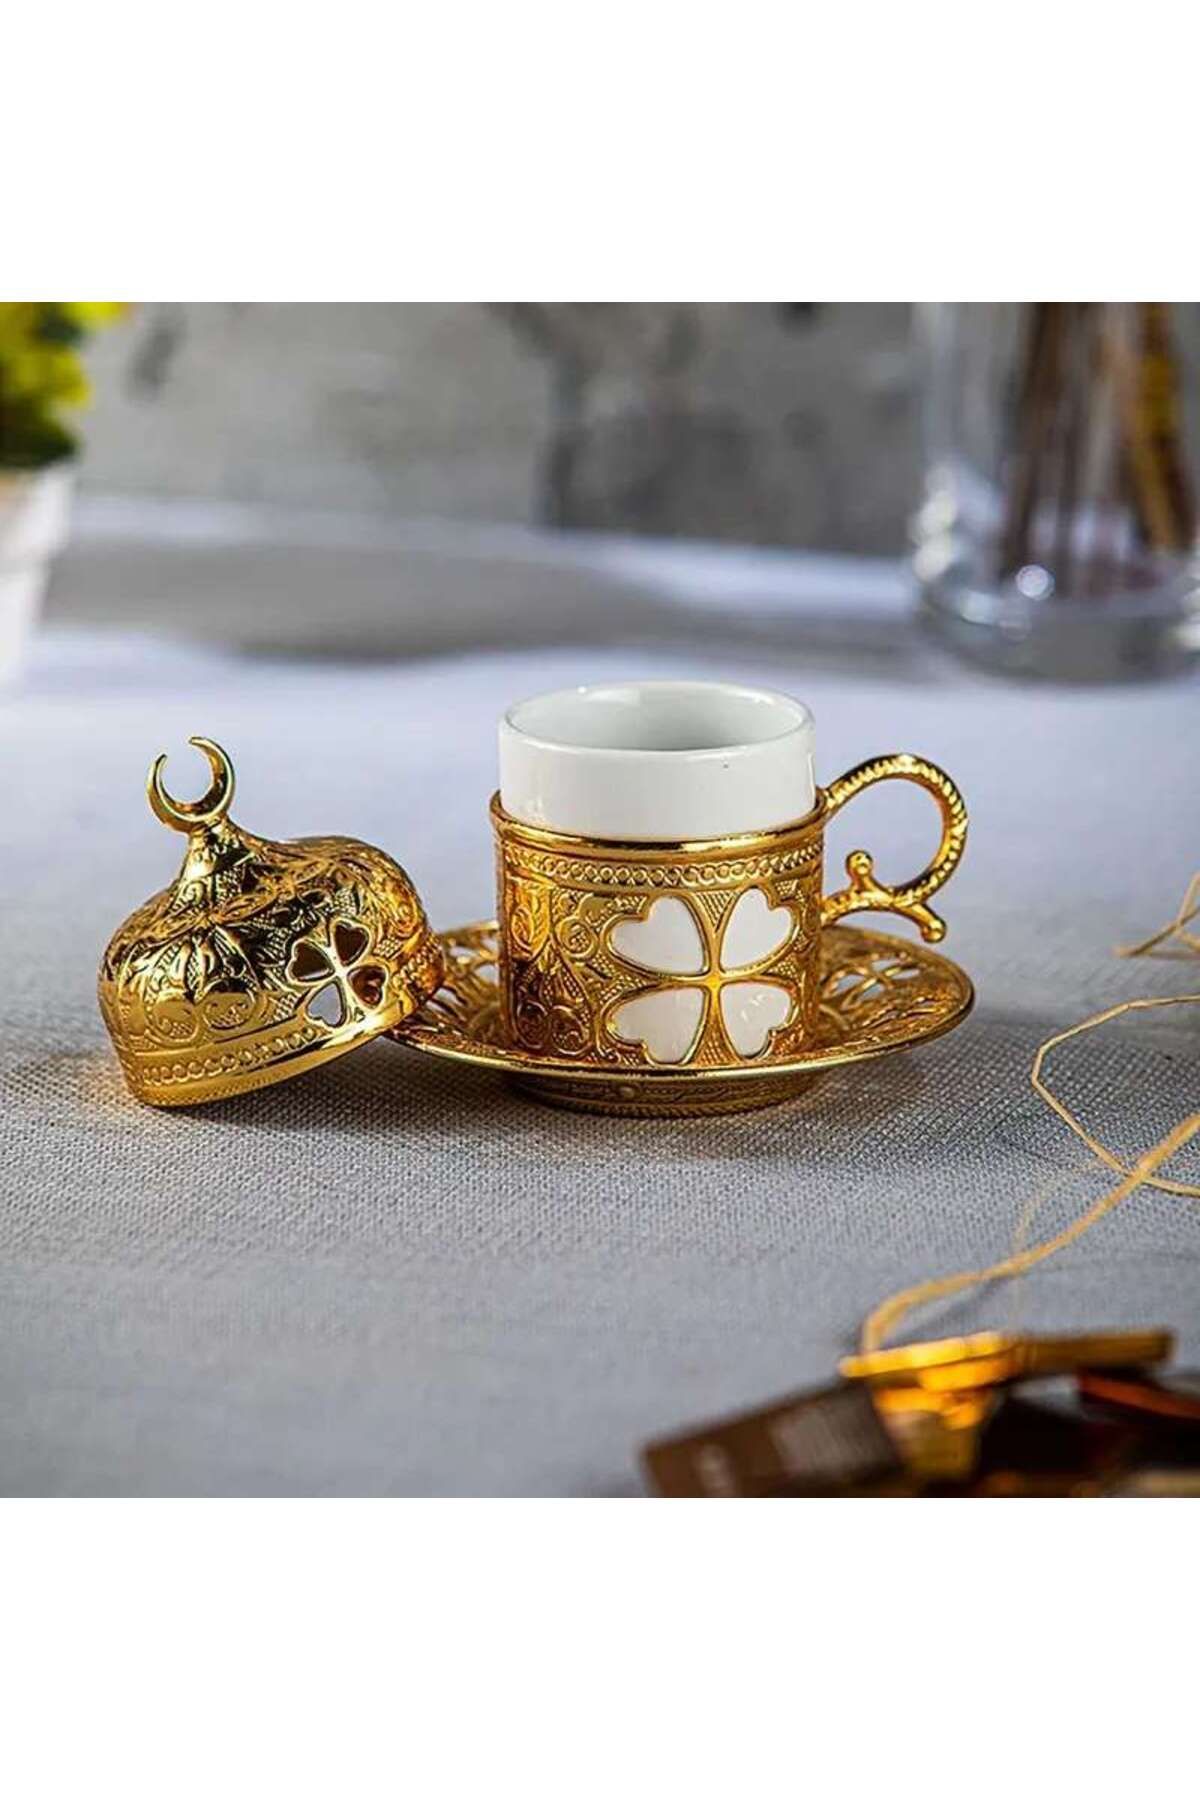 İnova Home Decor Yonca Tasarım Gold Renk Tekli Türk Kahvesi Fincanı